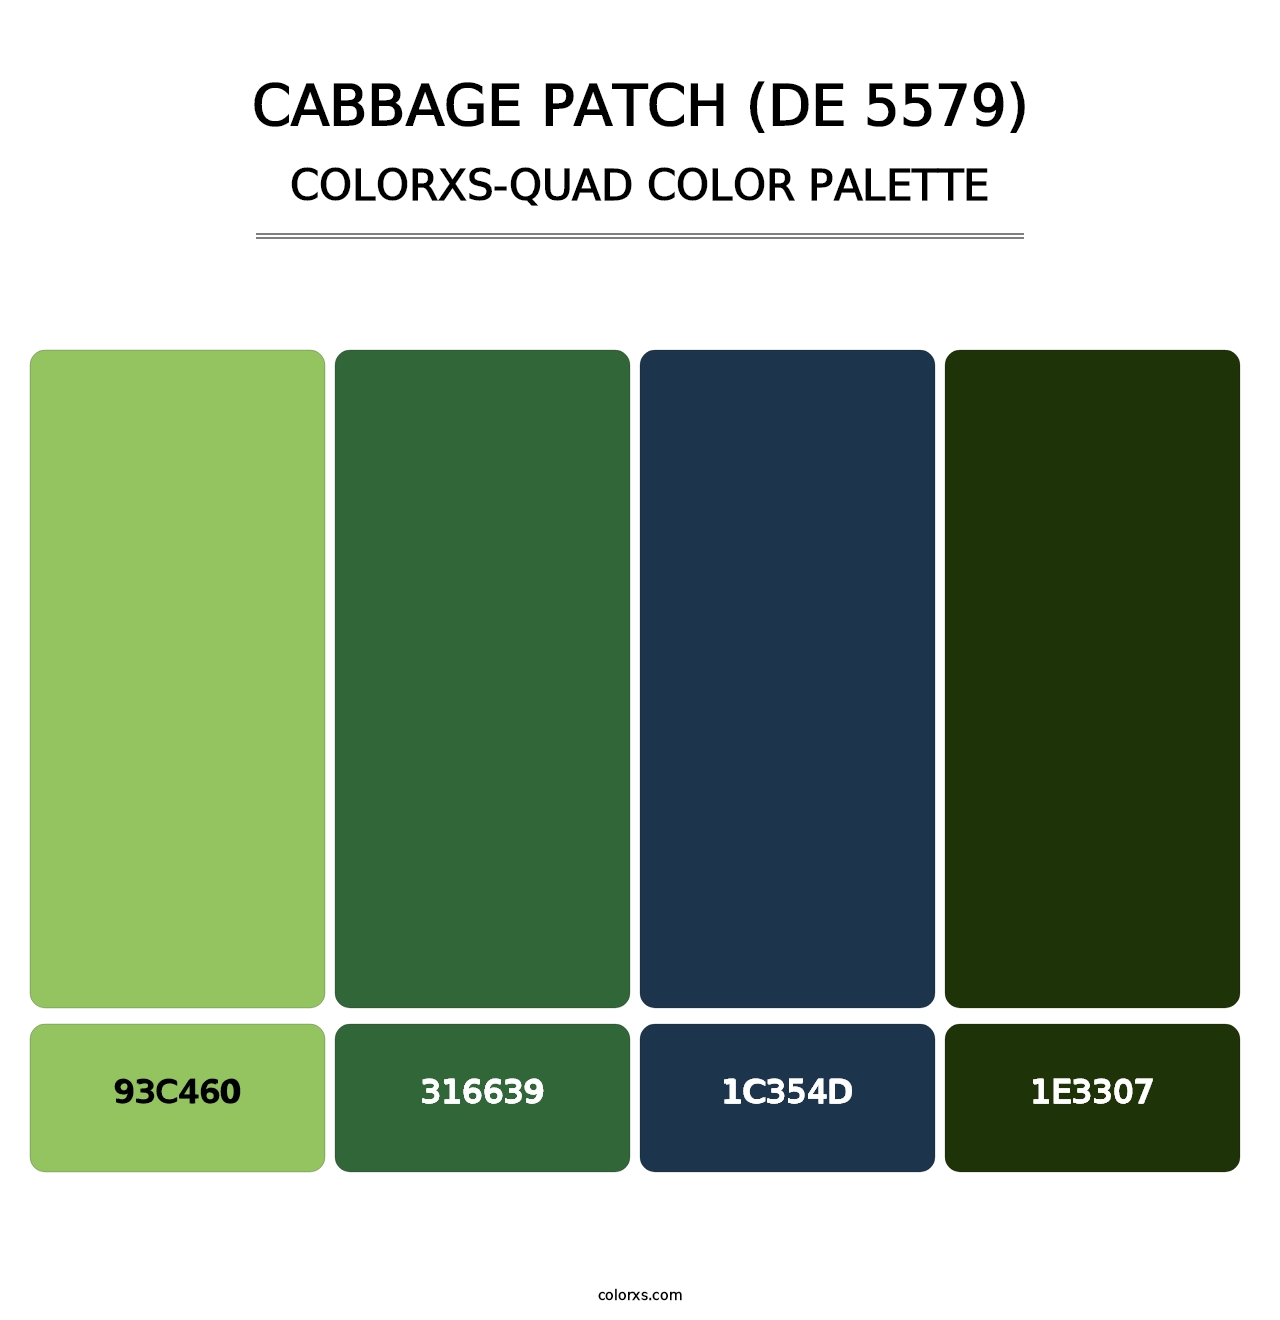 Cabbage Patch (DE 5579) - Colorxs Quad Palette